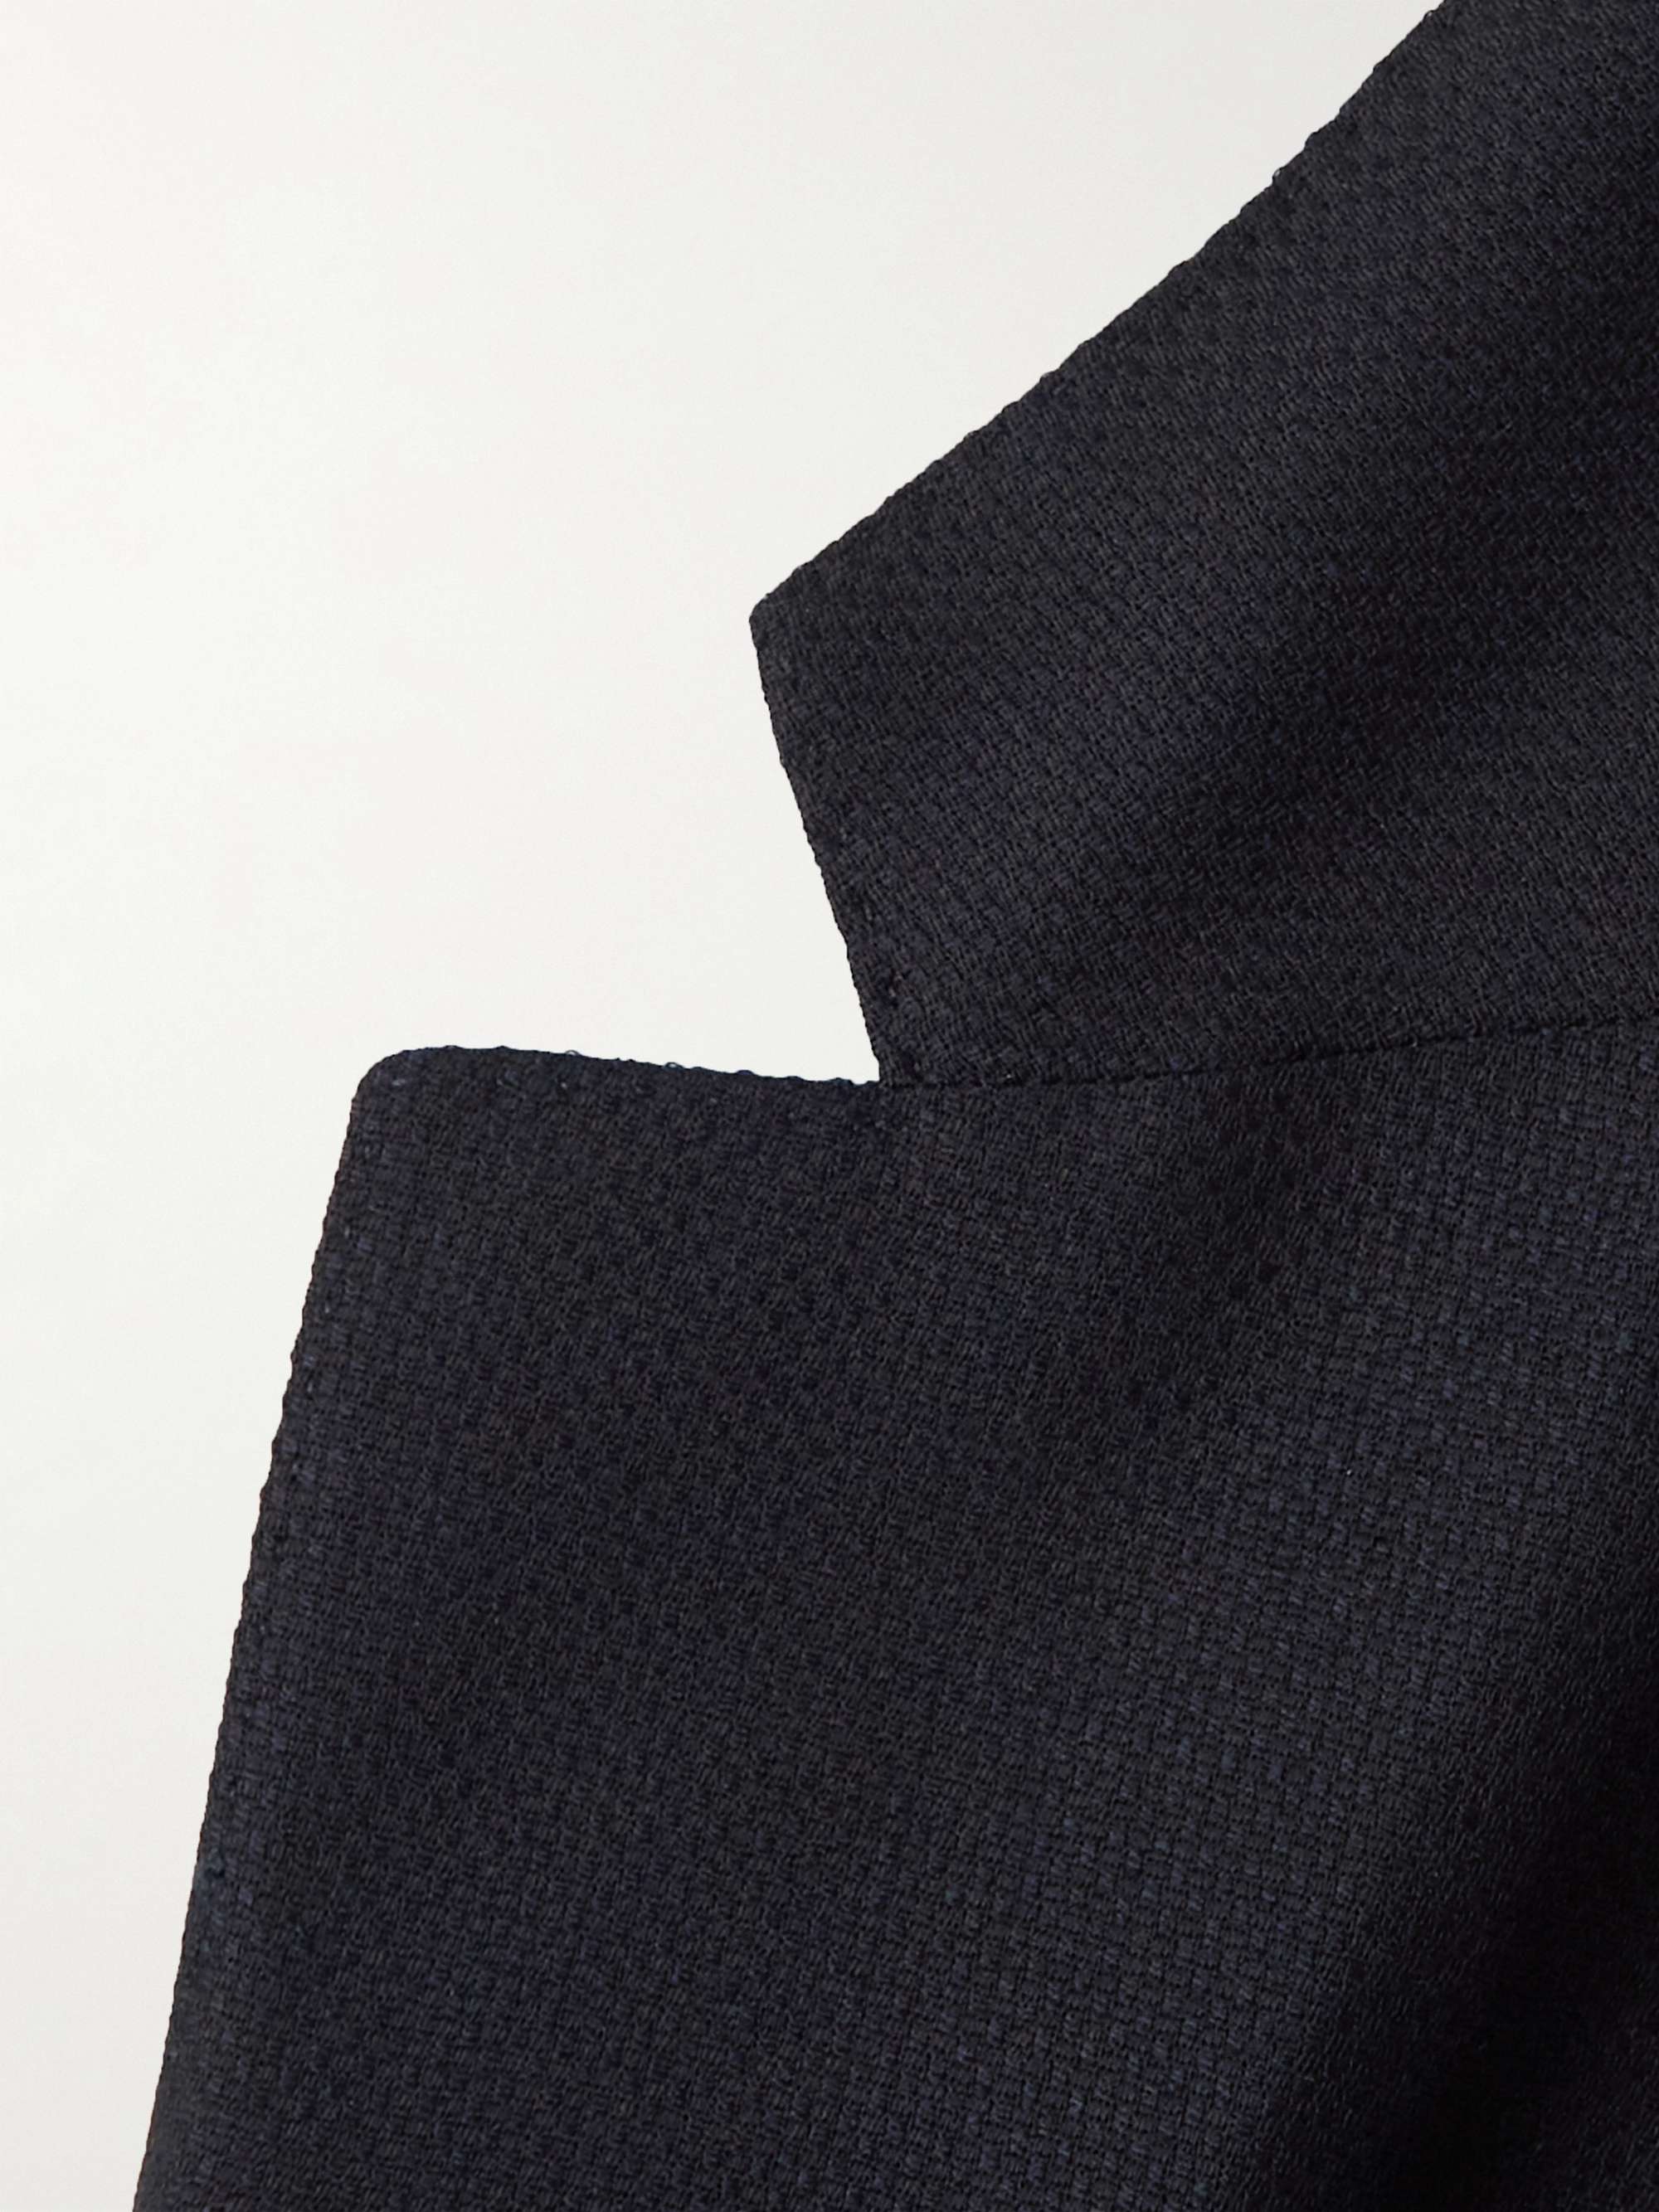 ZEGNA Wool-Blend Blazer for Men | MR PORTER